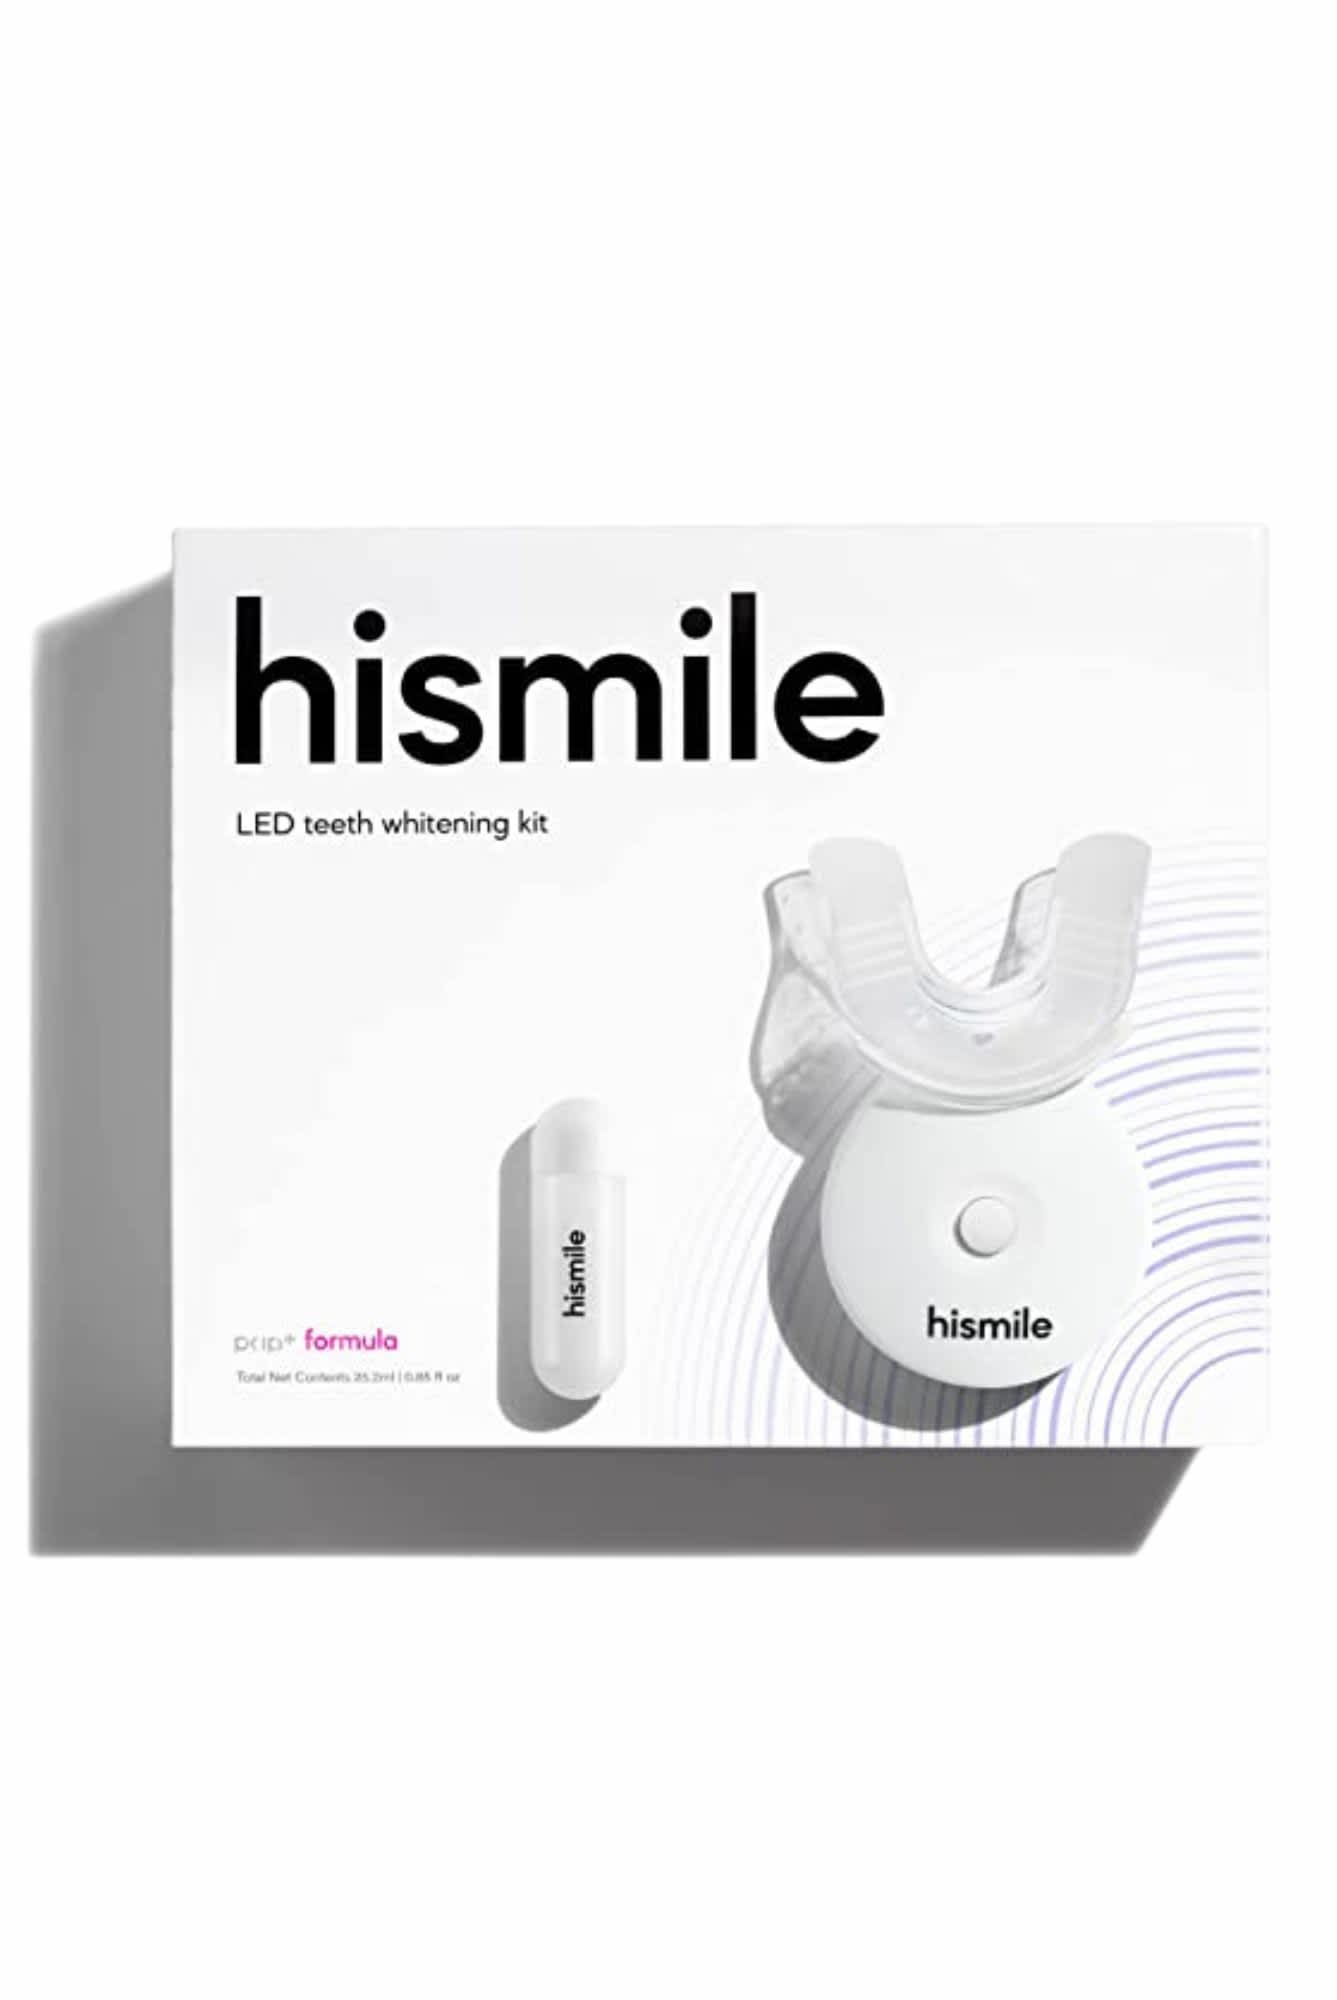 Hi Smile. PAP+ Whitening Kit ($145)